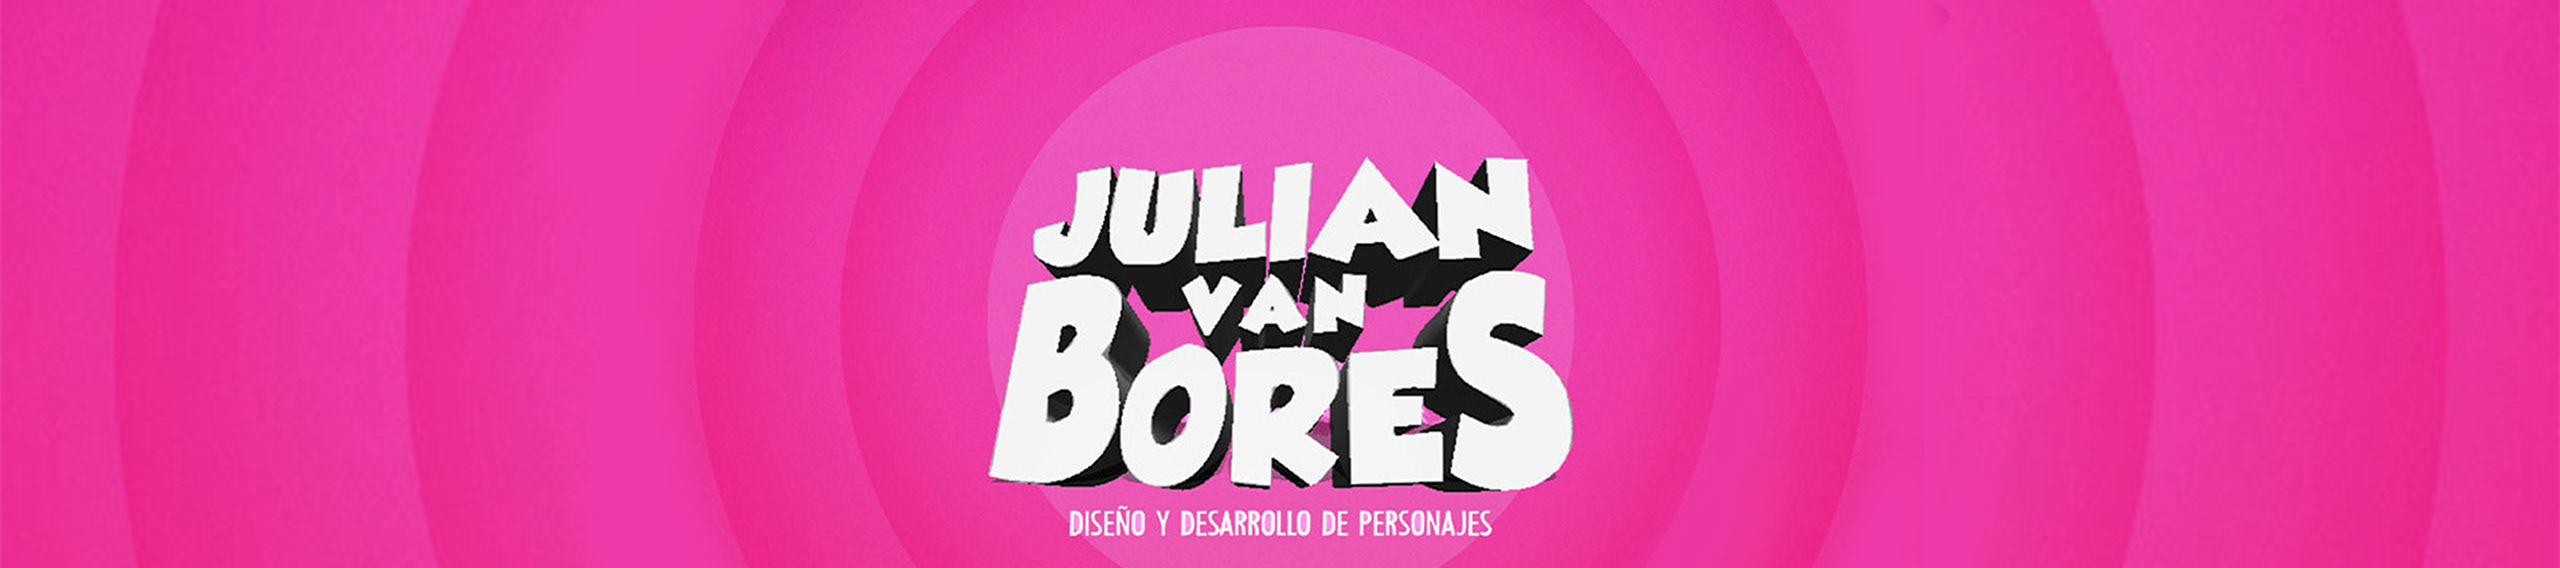 Julian Van Bores 的个人资料横幅